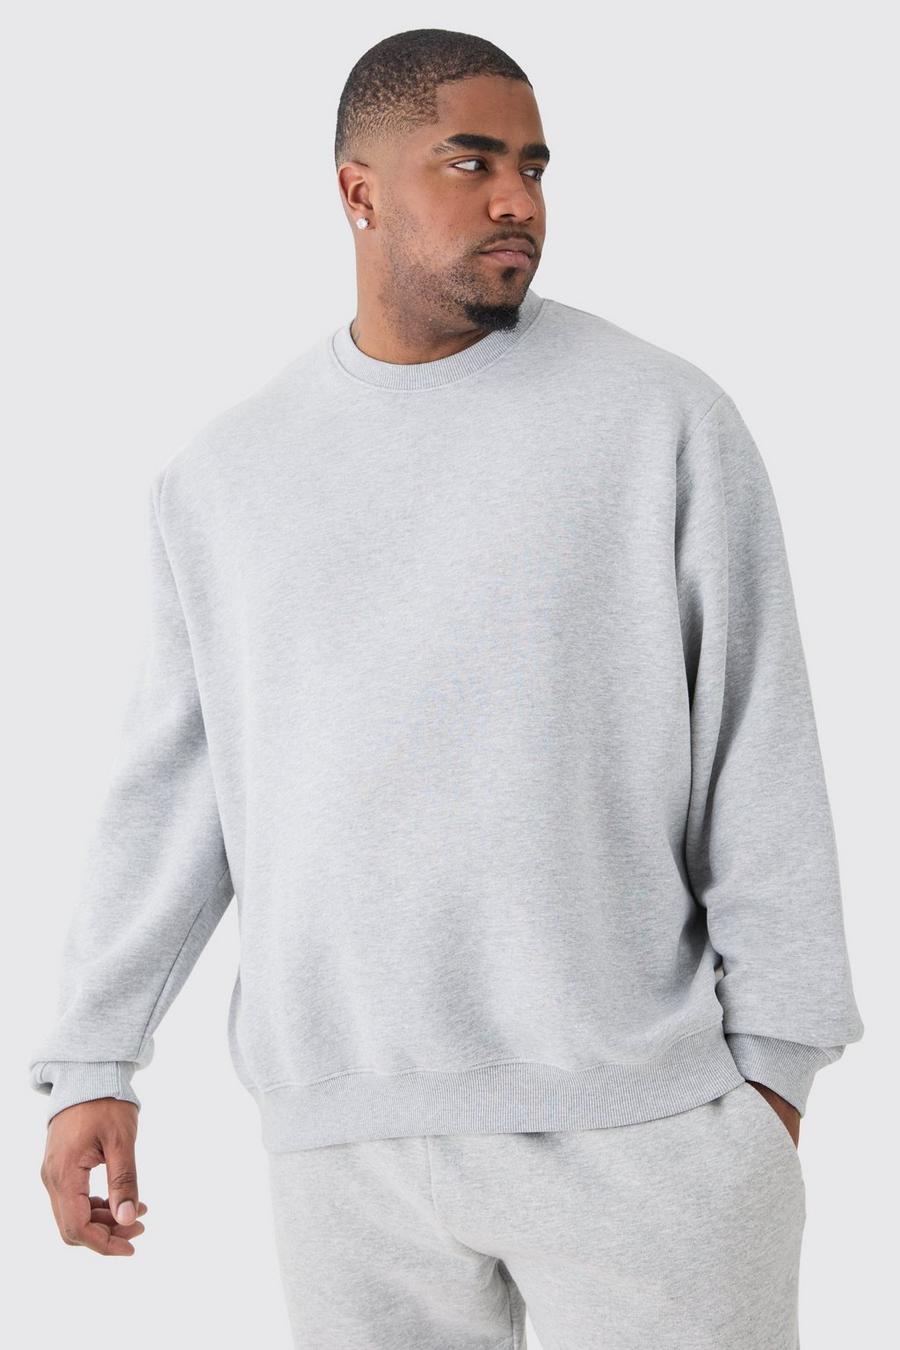 Plus Basic Sweatshirt In Grey Marl